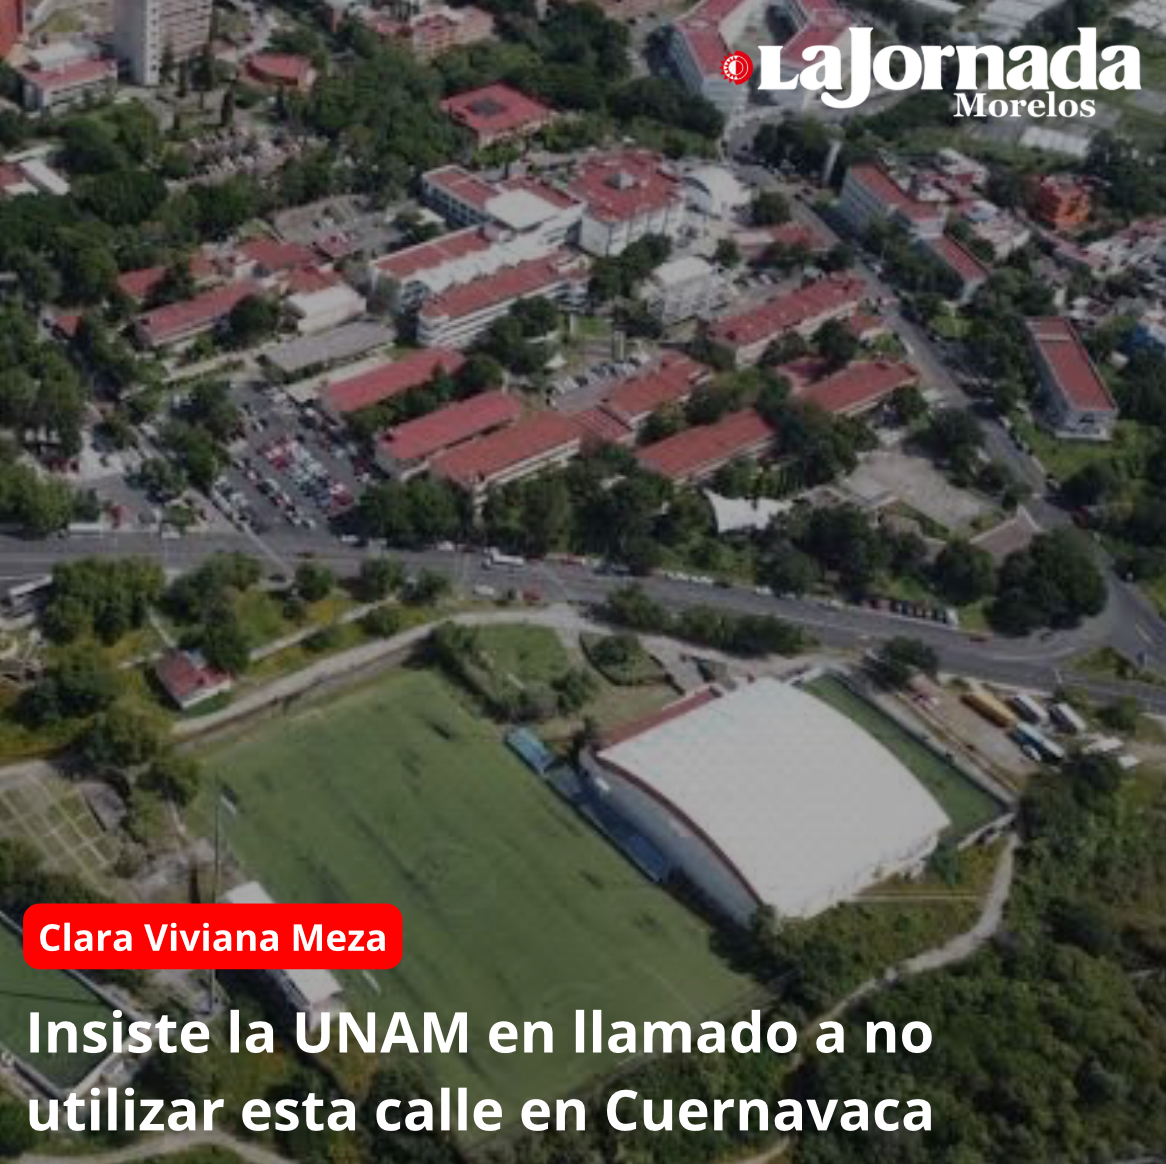 Insiste la UNAM en llamado a no utilizar esta calle en Cuernavaca